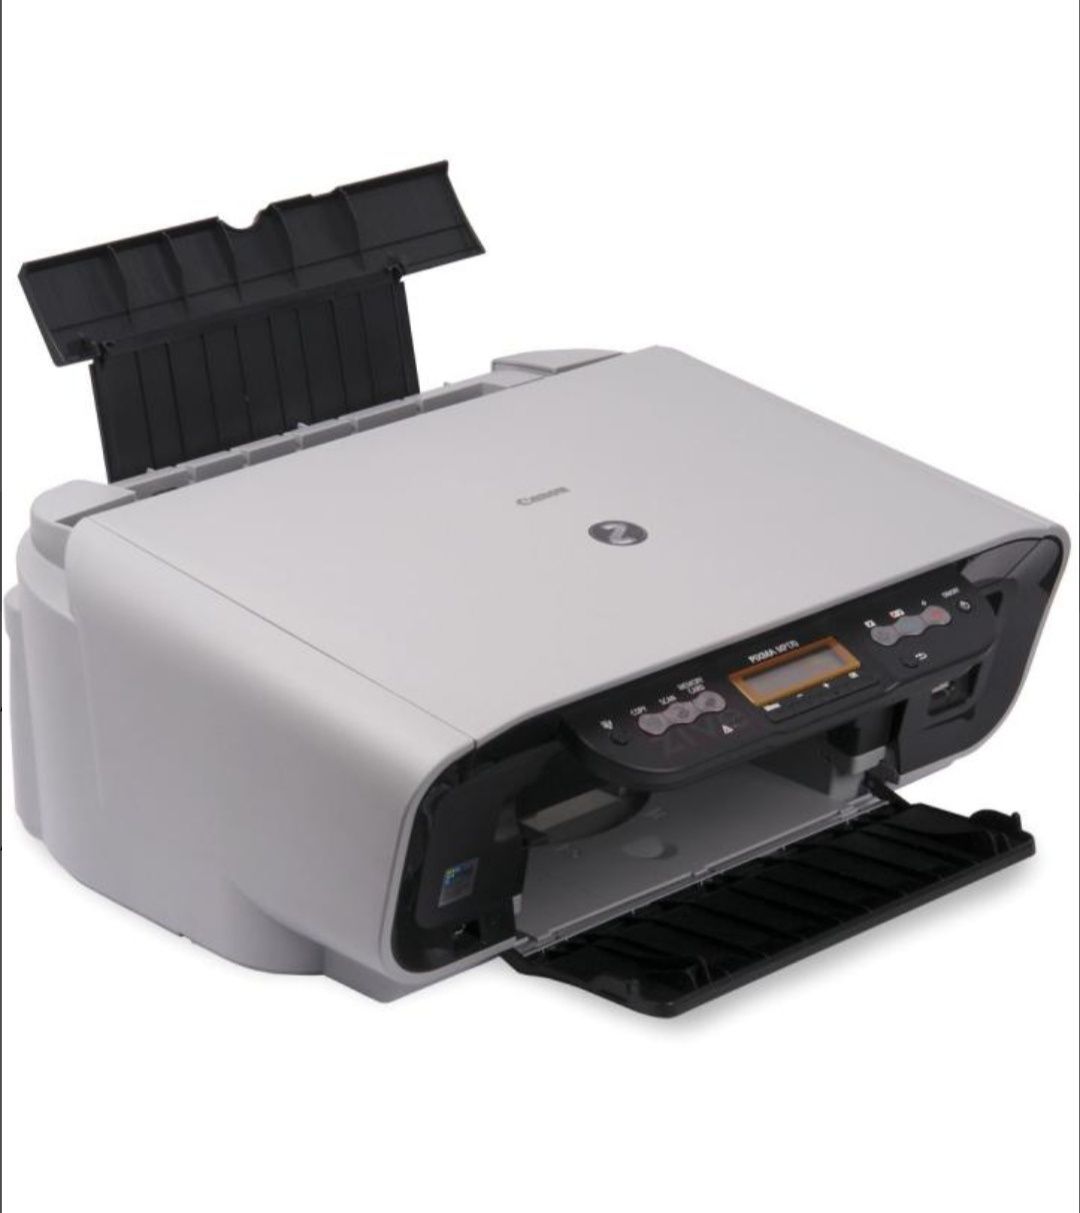 Imprimantă Cannon Pixma MP170